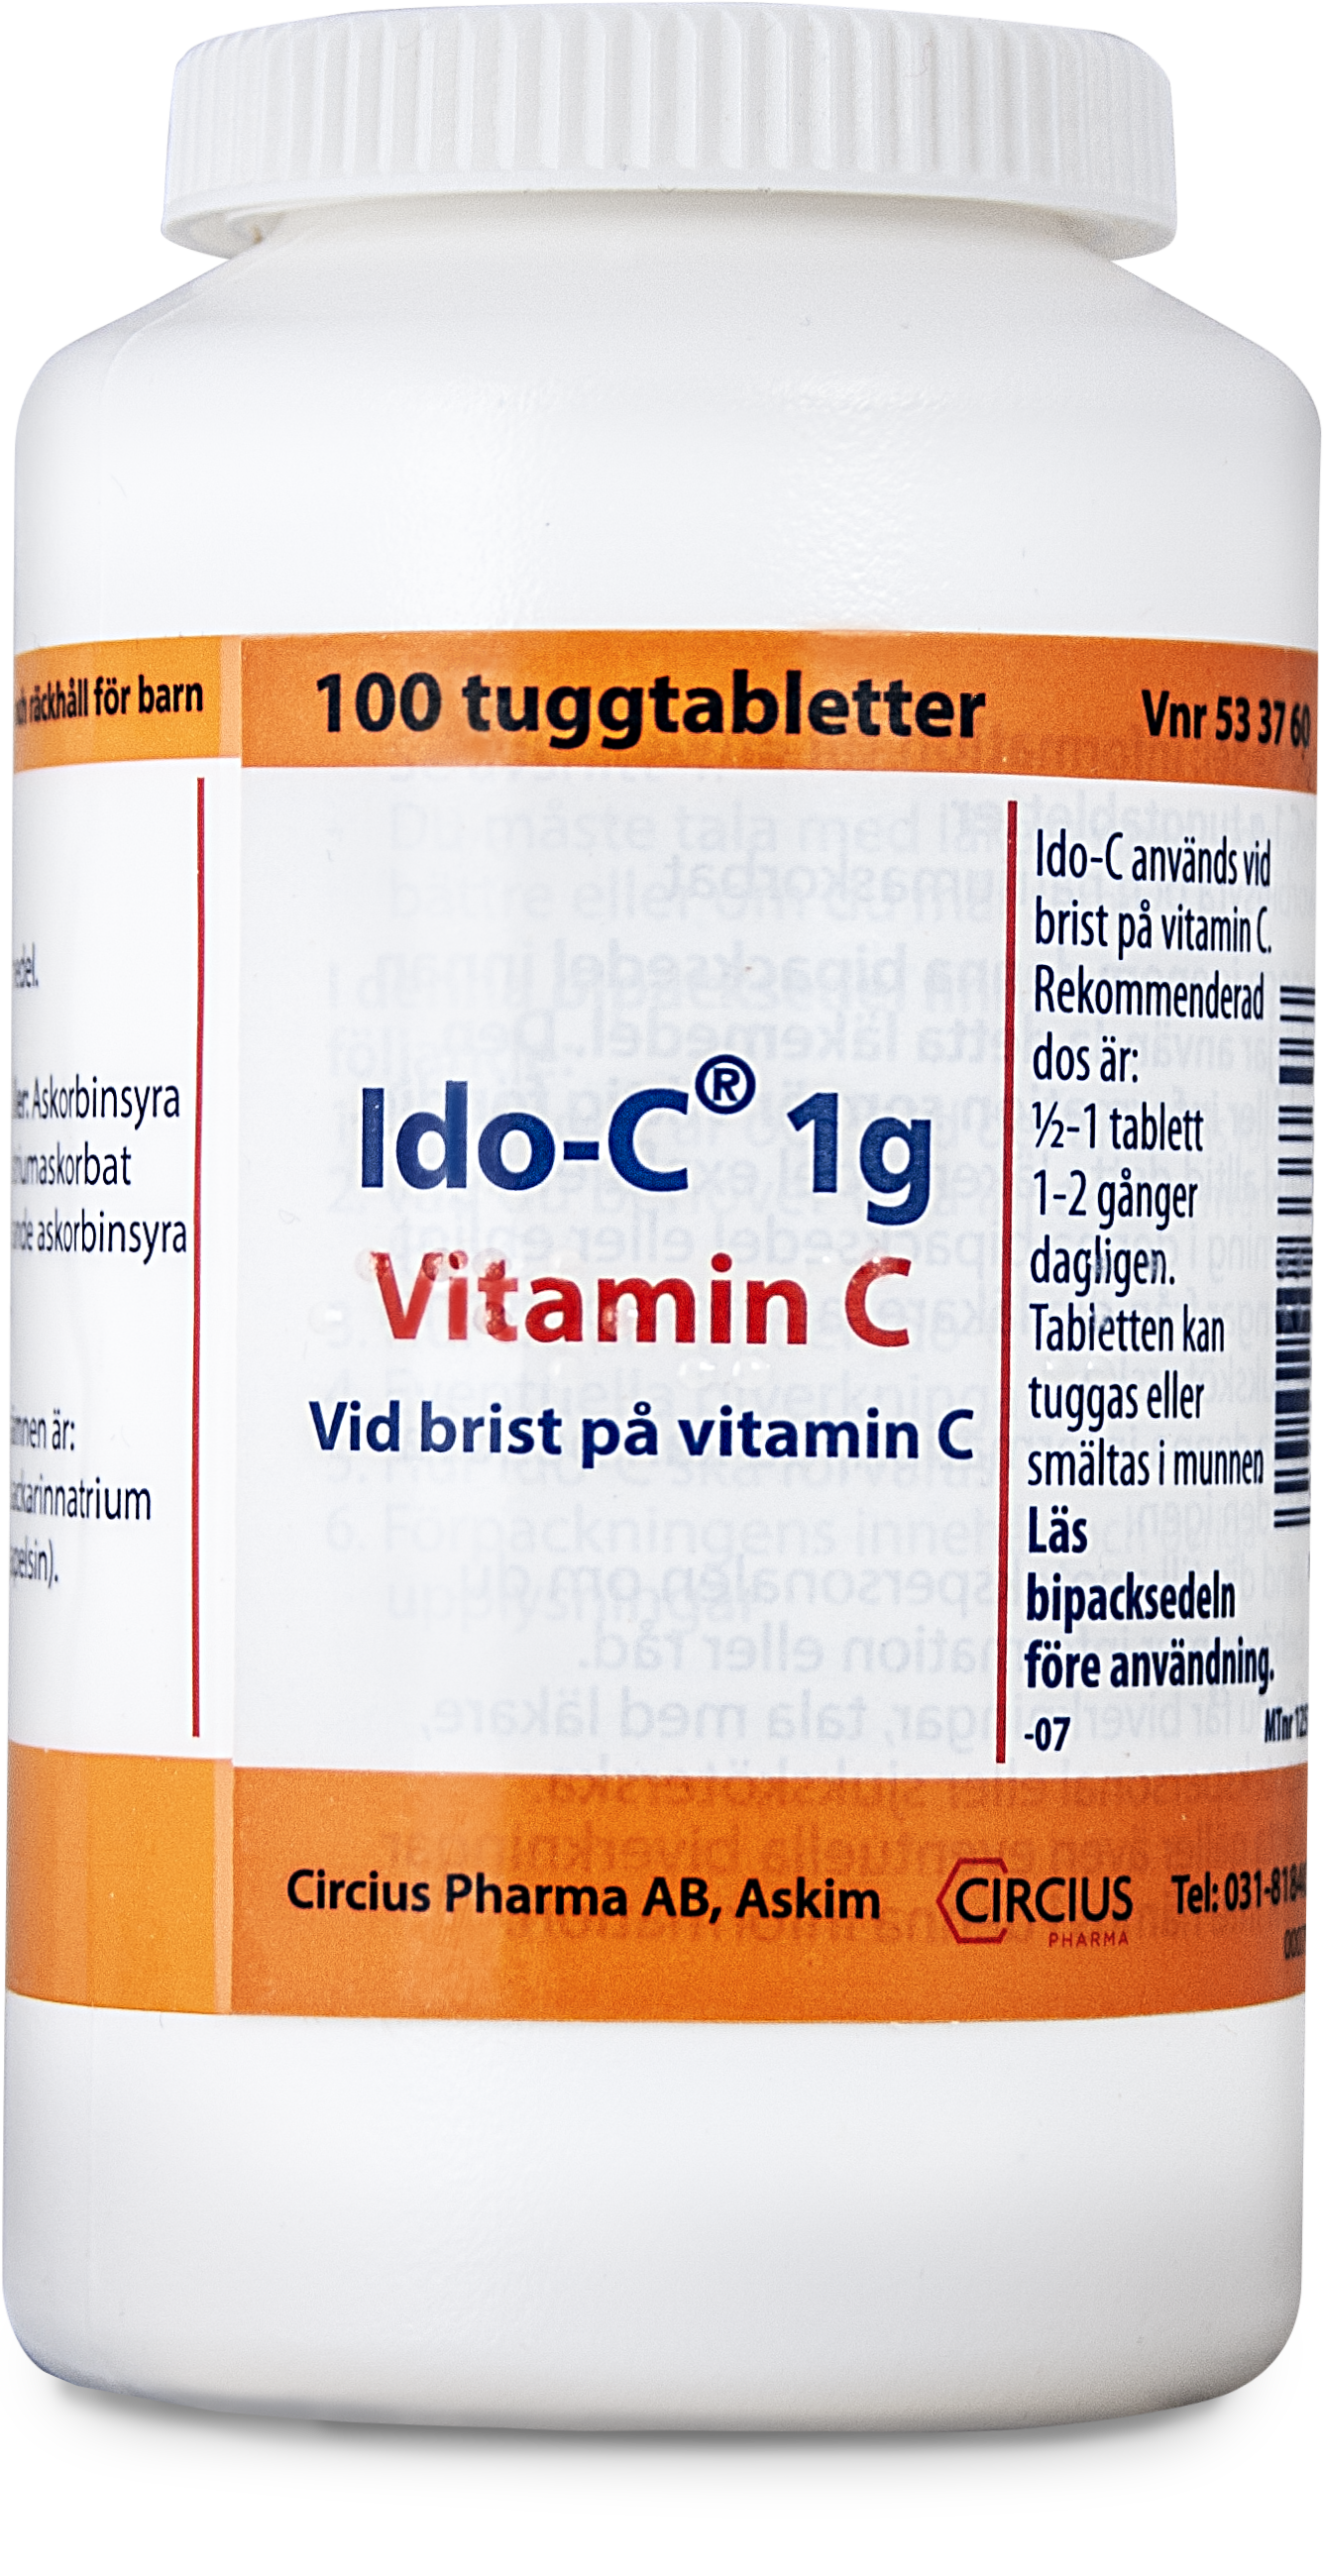 Ido-C 1 g Vitamin C 100 tuggtabletter